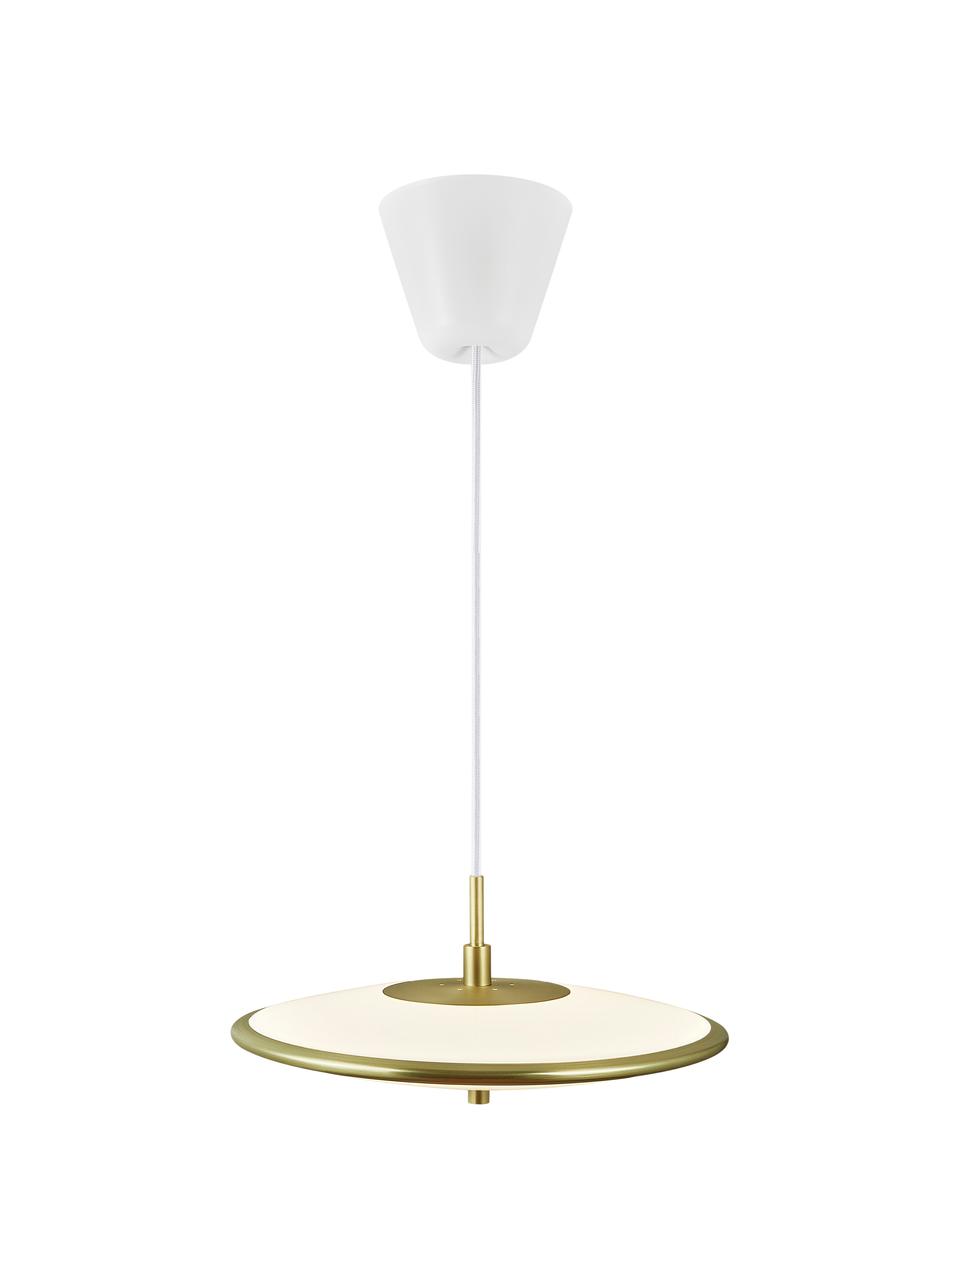 Dimbare LED hanglamp Blanche in wit/goudkleur, Lampenkap: kunststof, metaal, Baldakijn: kunststof, Wit, goudkleurig, Ø 32 x H 14 cm